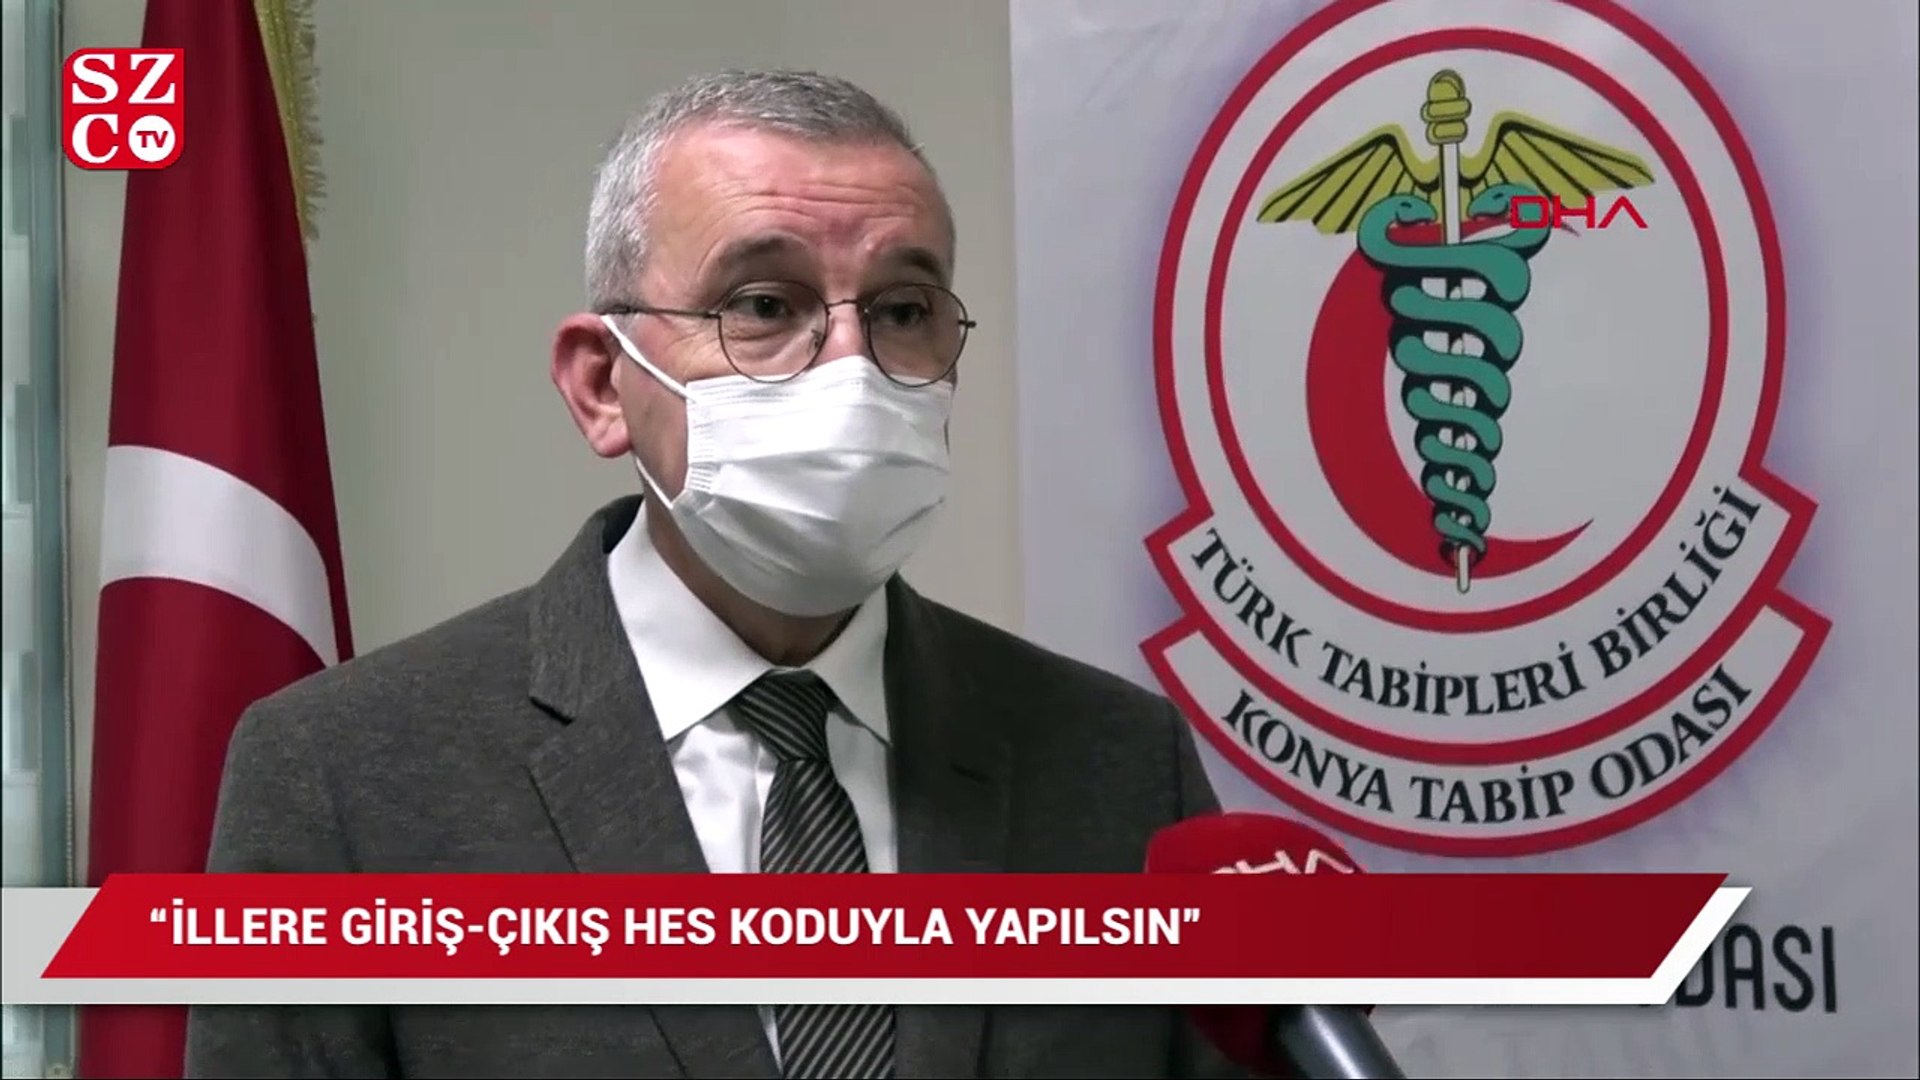 Konya Tabip Odası Başkanı: İllere giriş- çıkış 'HES' koduyla yapılsın -  Dailymotion Video